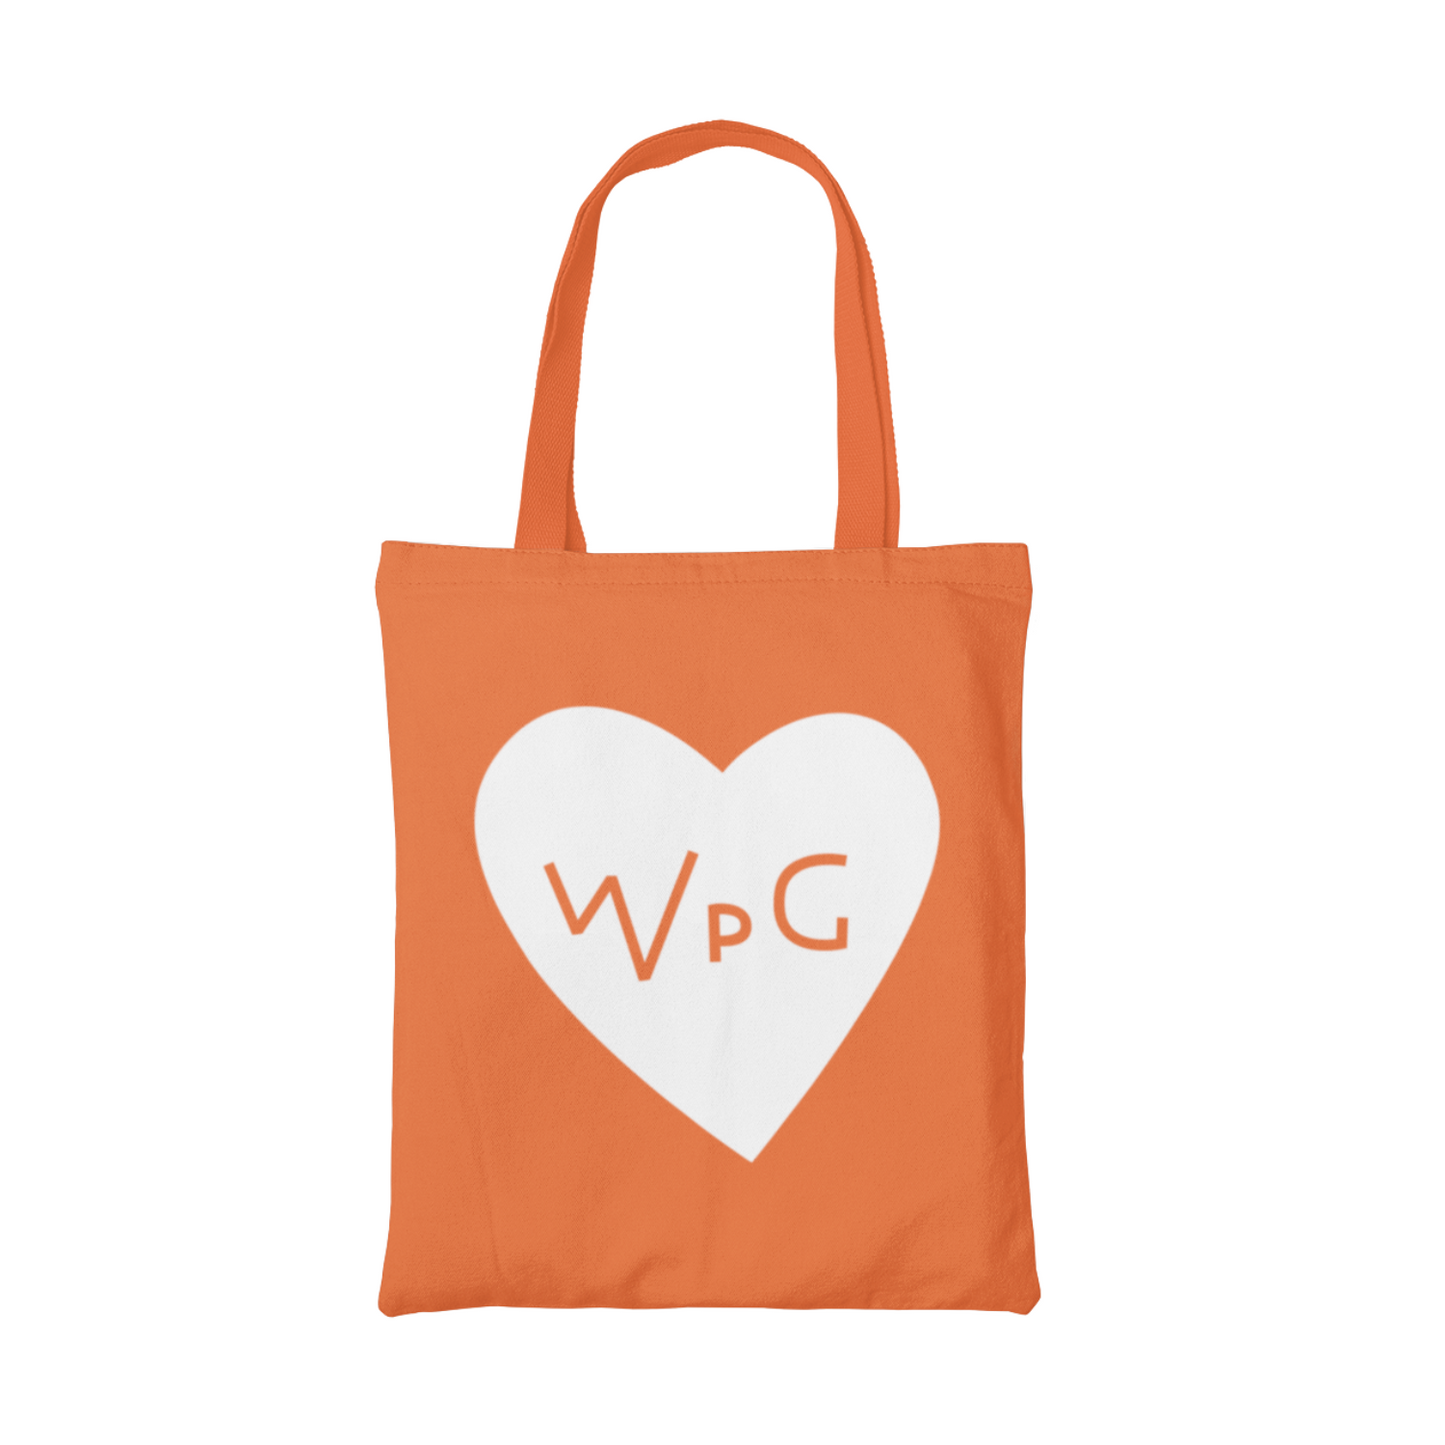 WPG Heart Tote | White on Orange